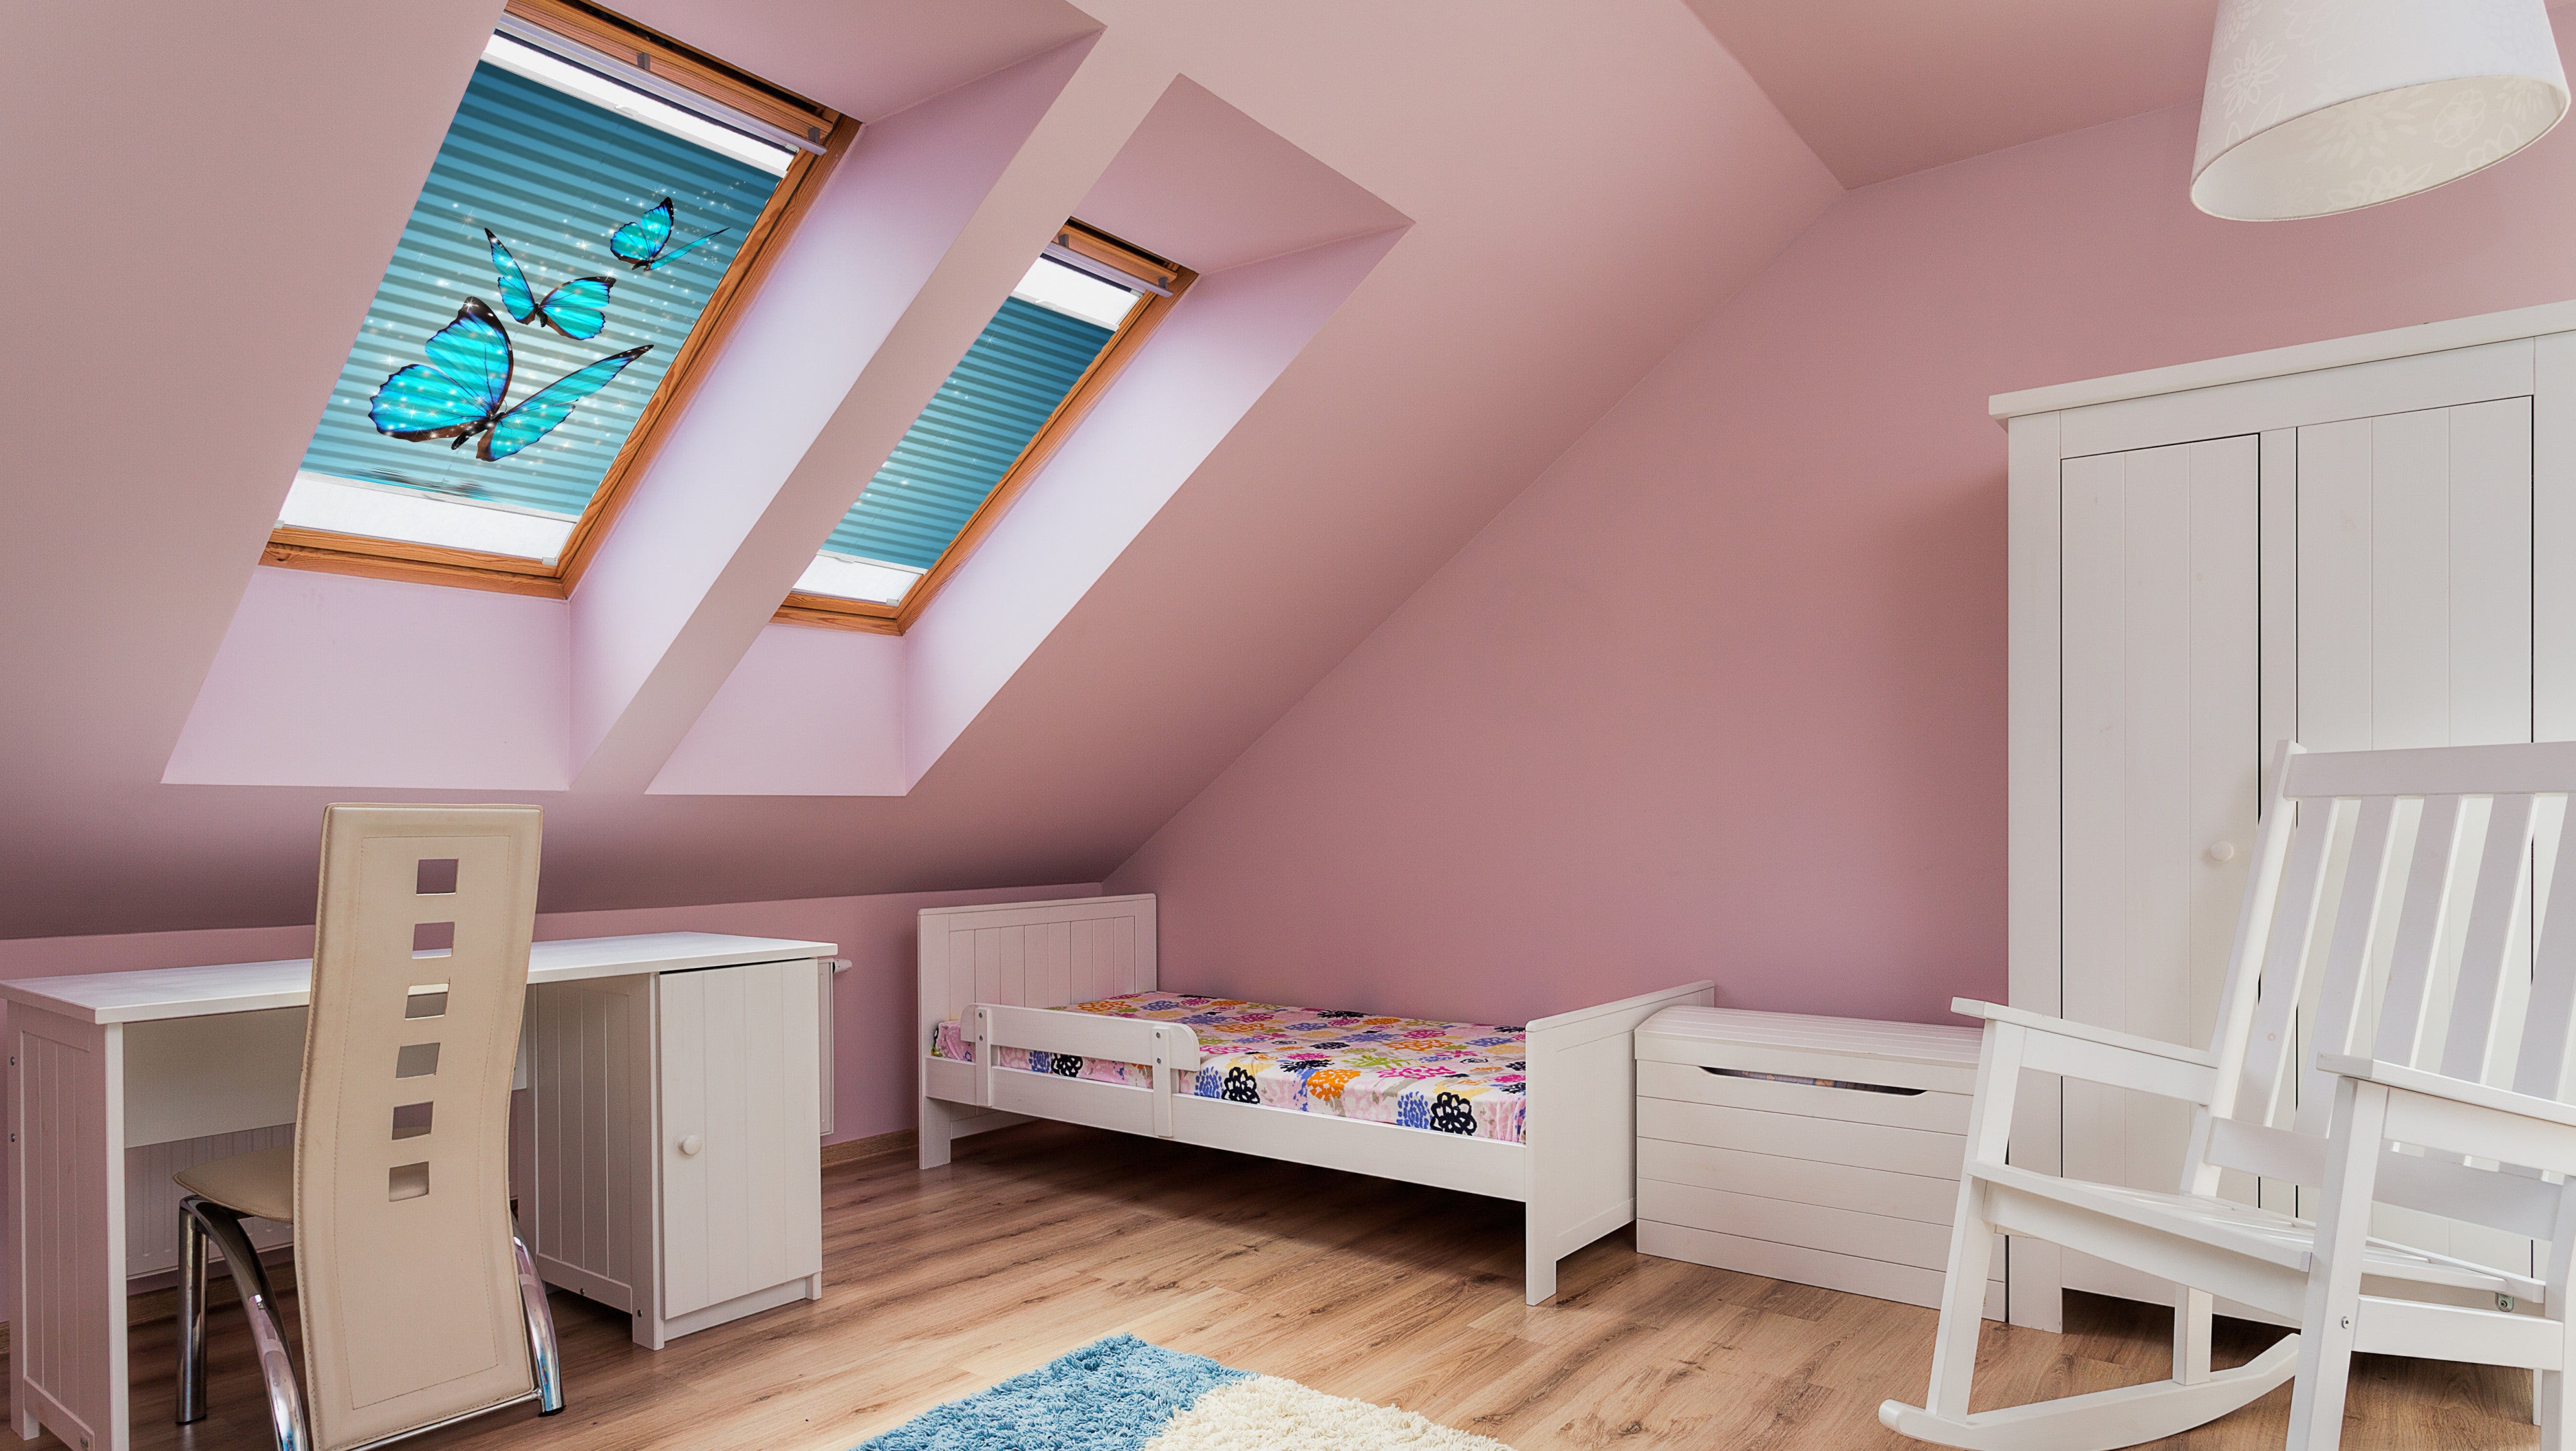 Kinderzimmer mit 2 Dachfenstern und Plissees mit Schmetterlingen bedruckt